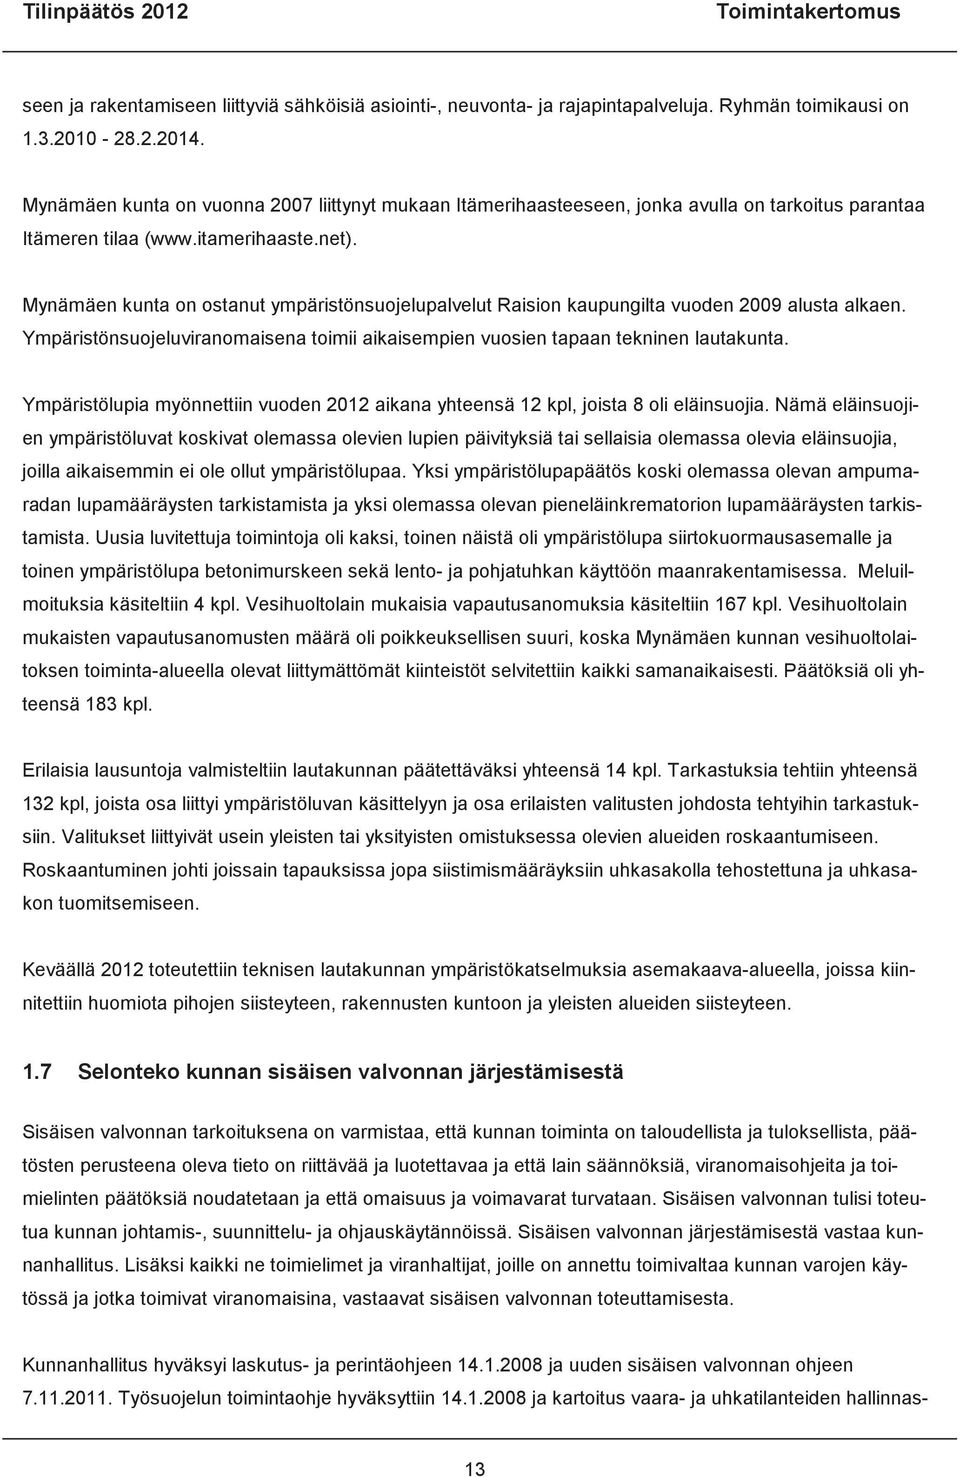 Mynämäen kunta on ostanut ympäristönsuojelupalvelut Raision kaupungilta vuoden 2009 alusta alkaen. Ympäristönsuojeluviranomaisena toimii aikaisempien vuosien tapaan tekninen lautakunta.